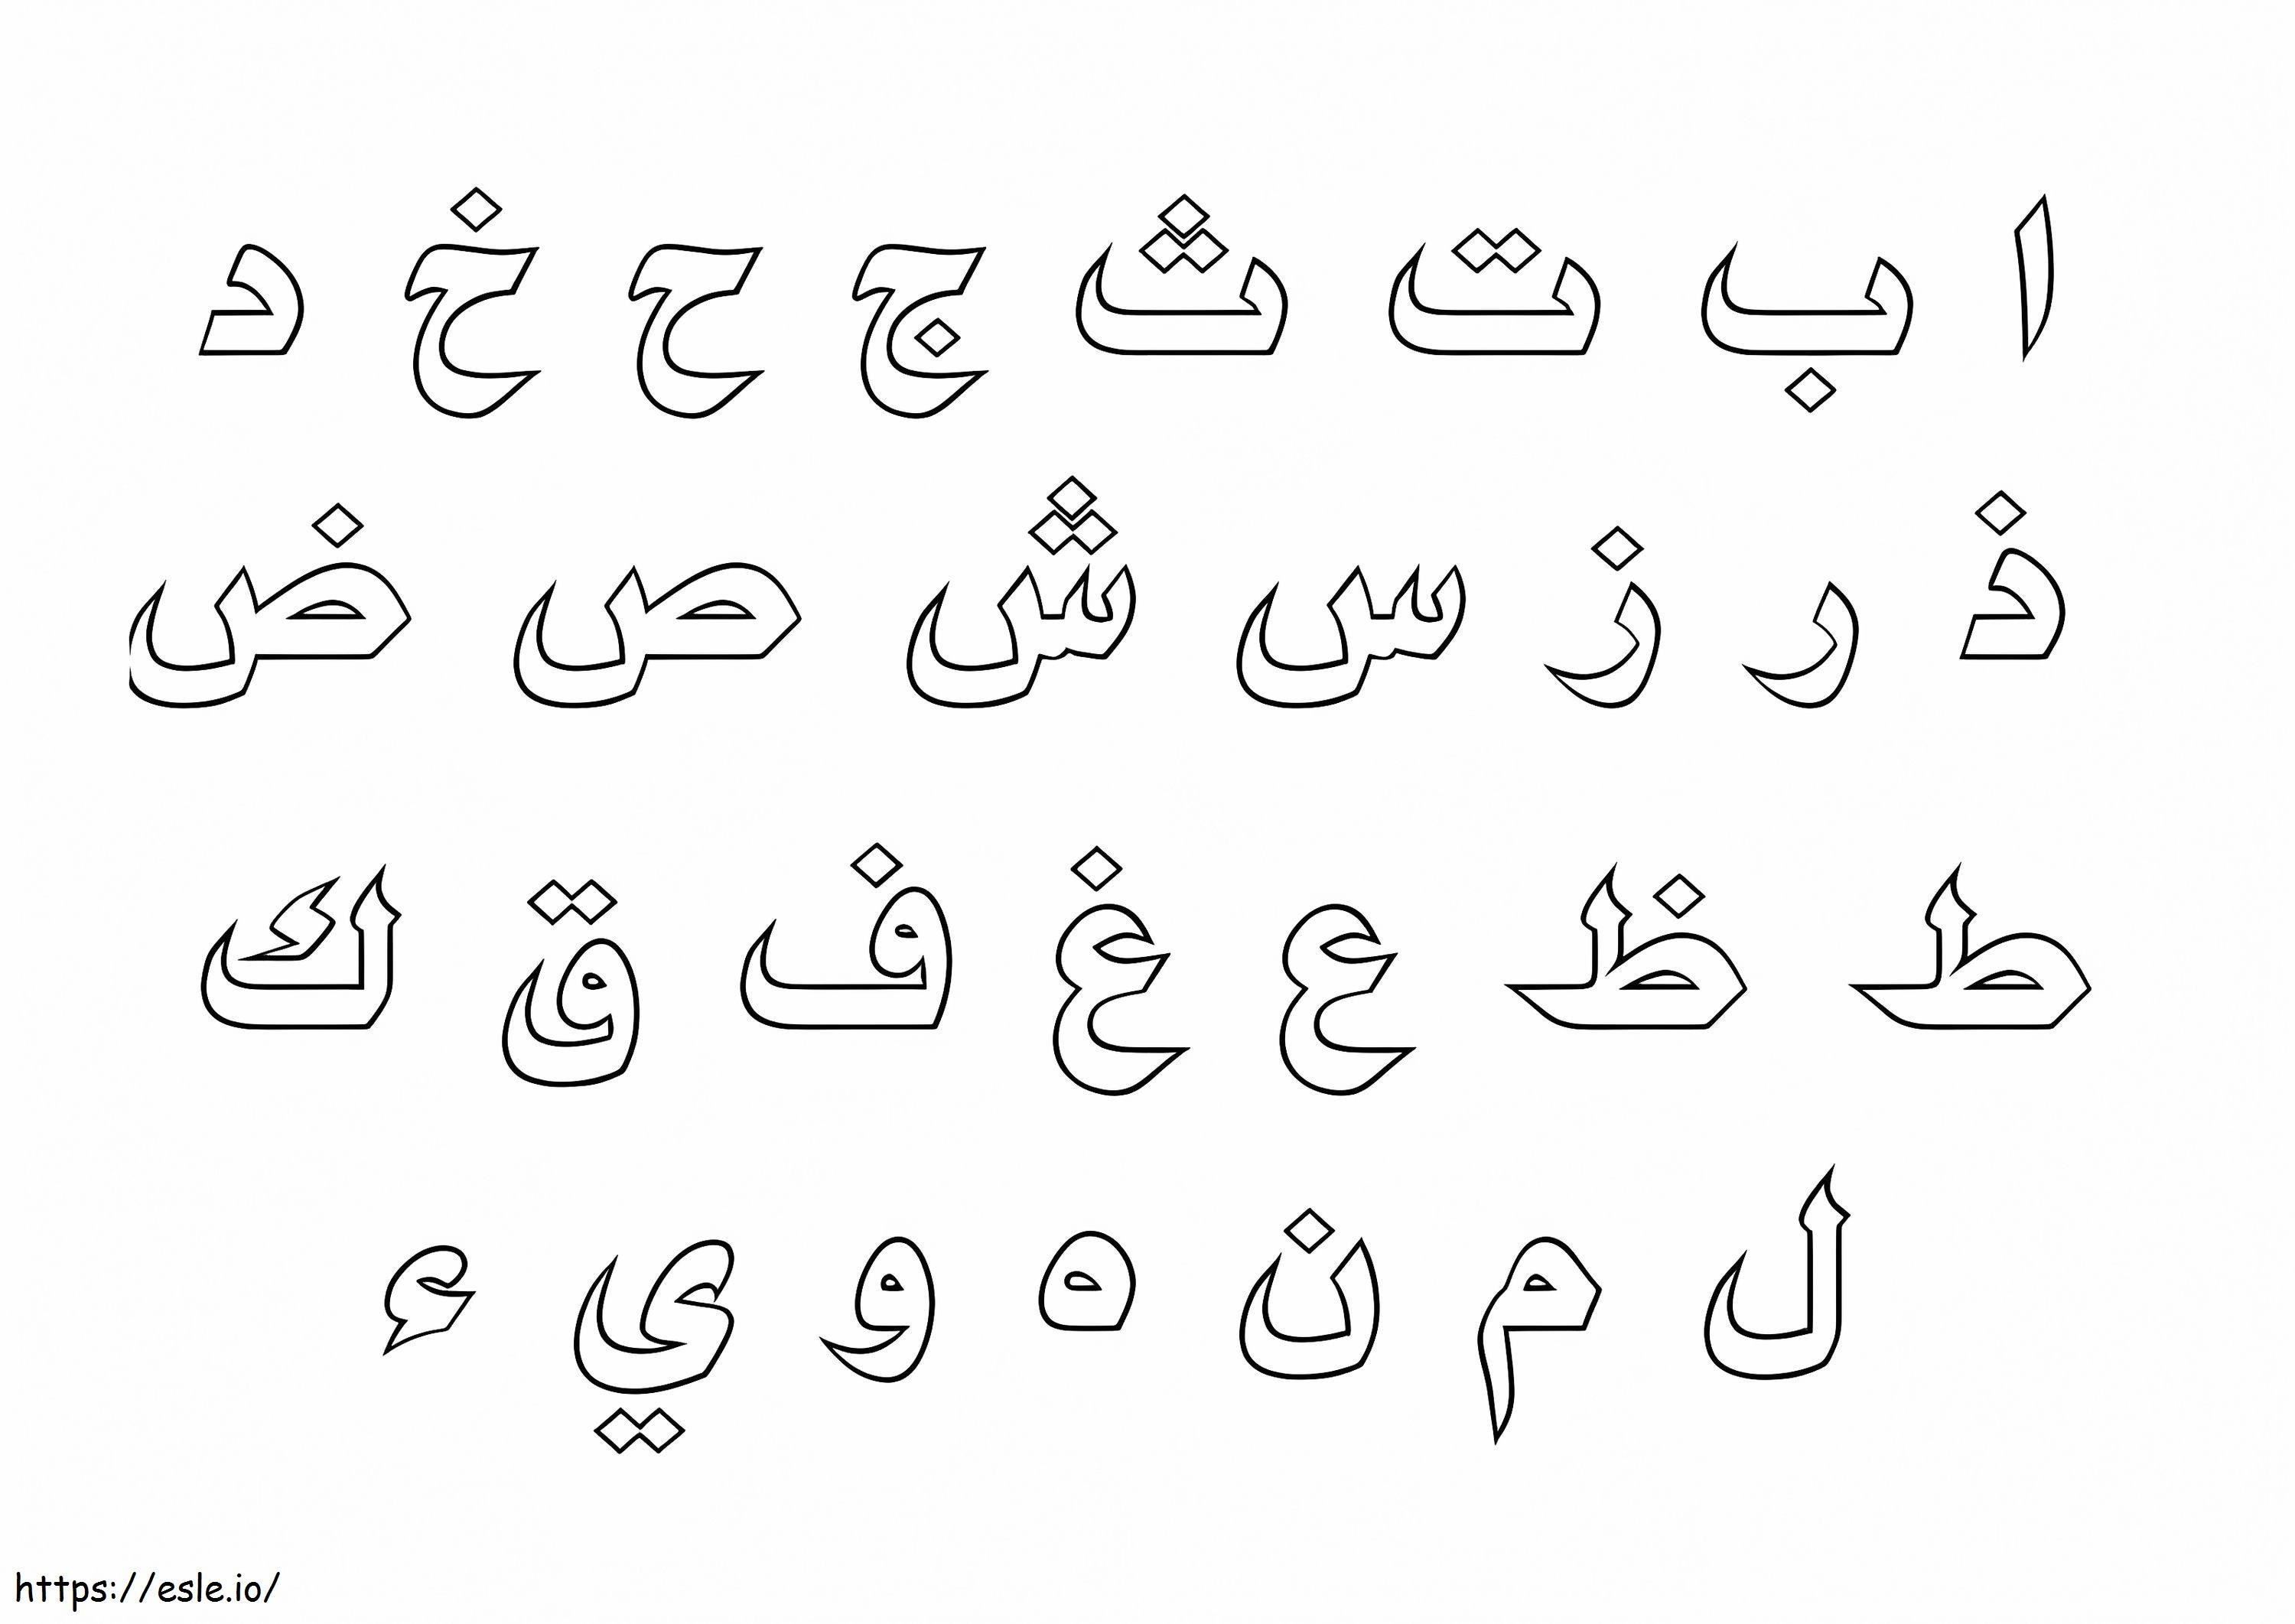 Coloriage Alphabet arabe imprimable à imprimer dessin